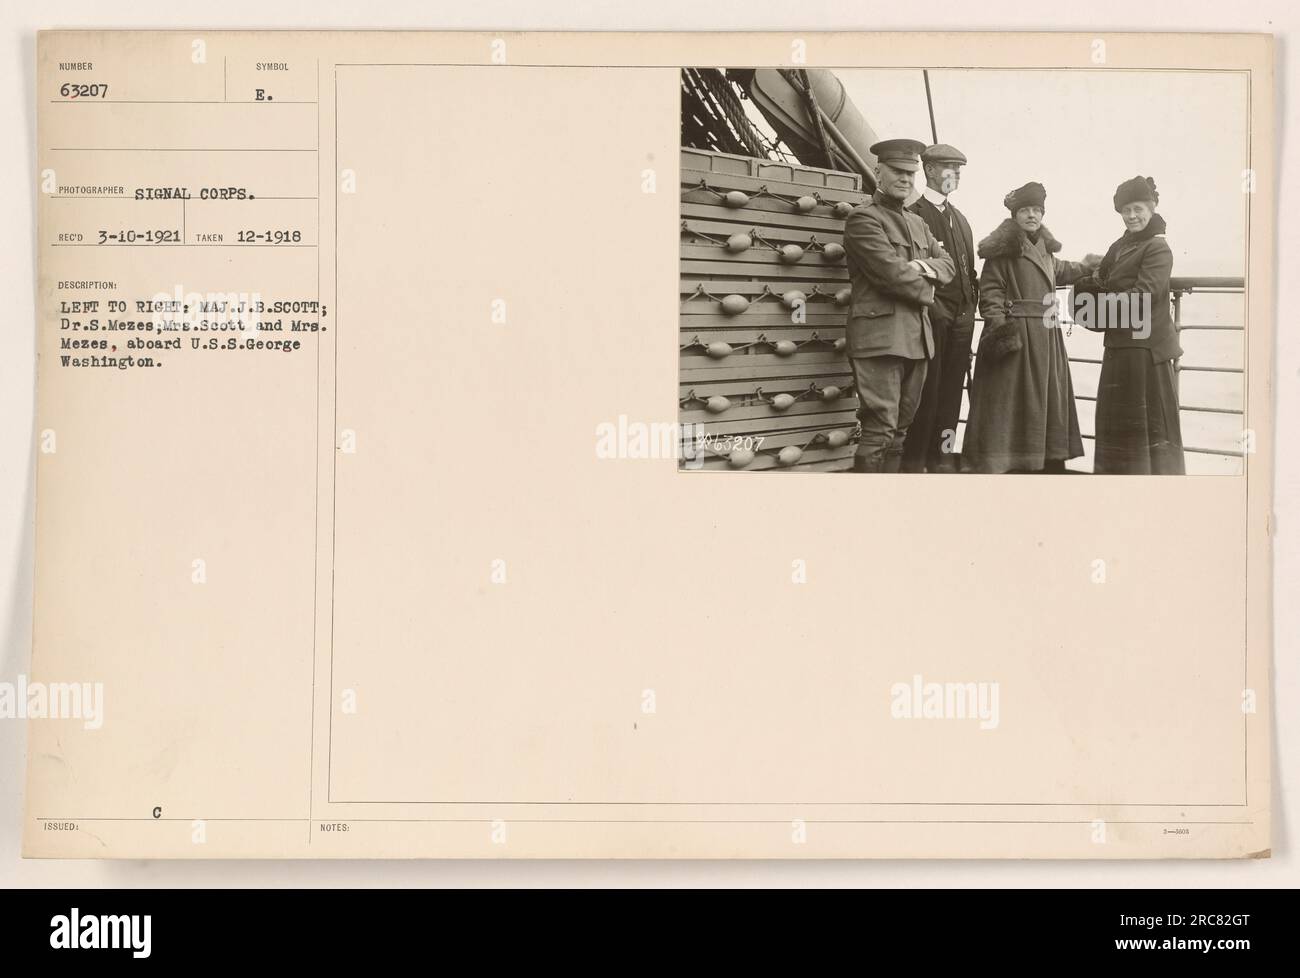 Von links nach rechts: Major J.B. Scott, Dr. S. Mezes, Mrs. Scott und Mrs. Mezes werden an Bord der U.S.S. gesehen George Washington. Dieses Foto wurde im Dezember 1918 um 1800 Uhr aufgenommen. Sie wurde am 10. März 1921 vom Signalkorps empfangen (Sumber 63207 Symbol E). Zusätzliche Hinweise geben die Identitäten der im Bild erfassten Personen an. Stockfoto